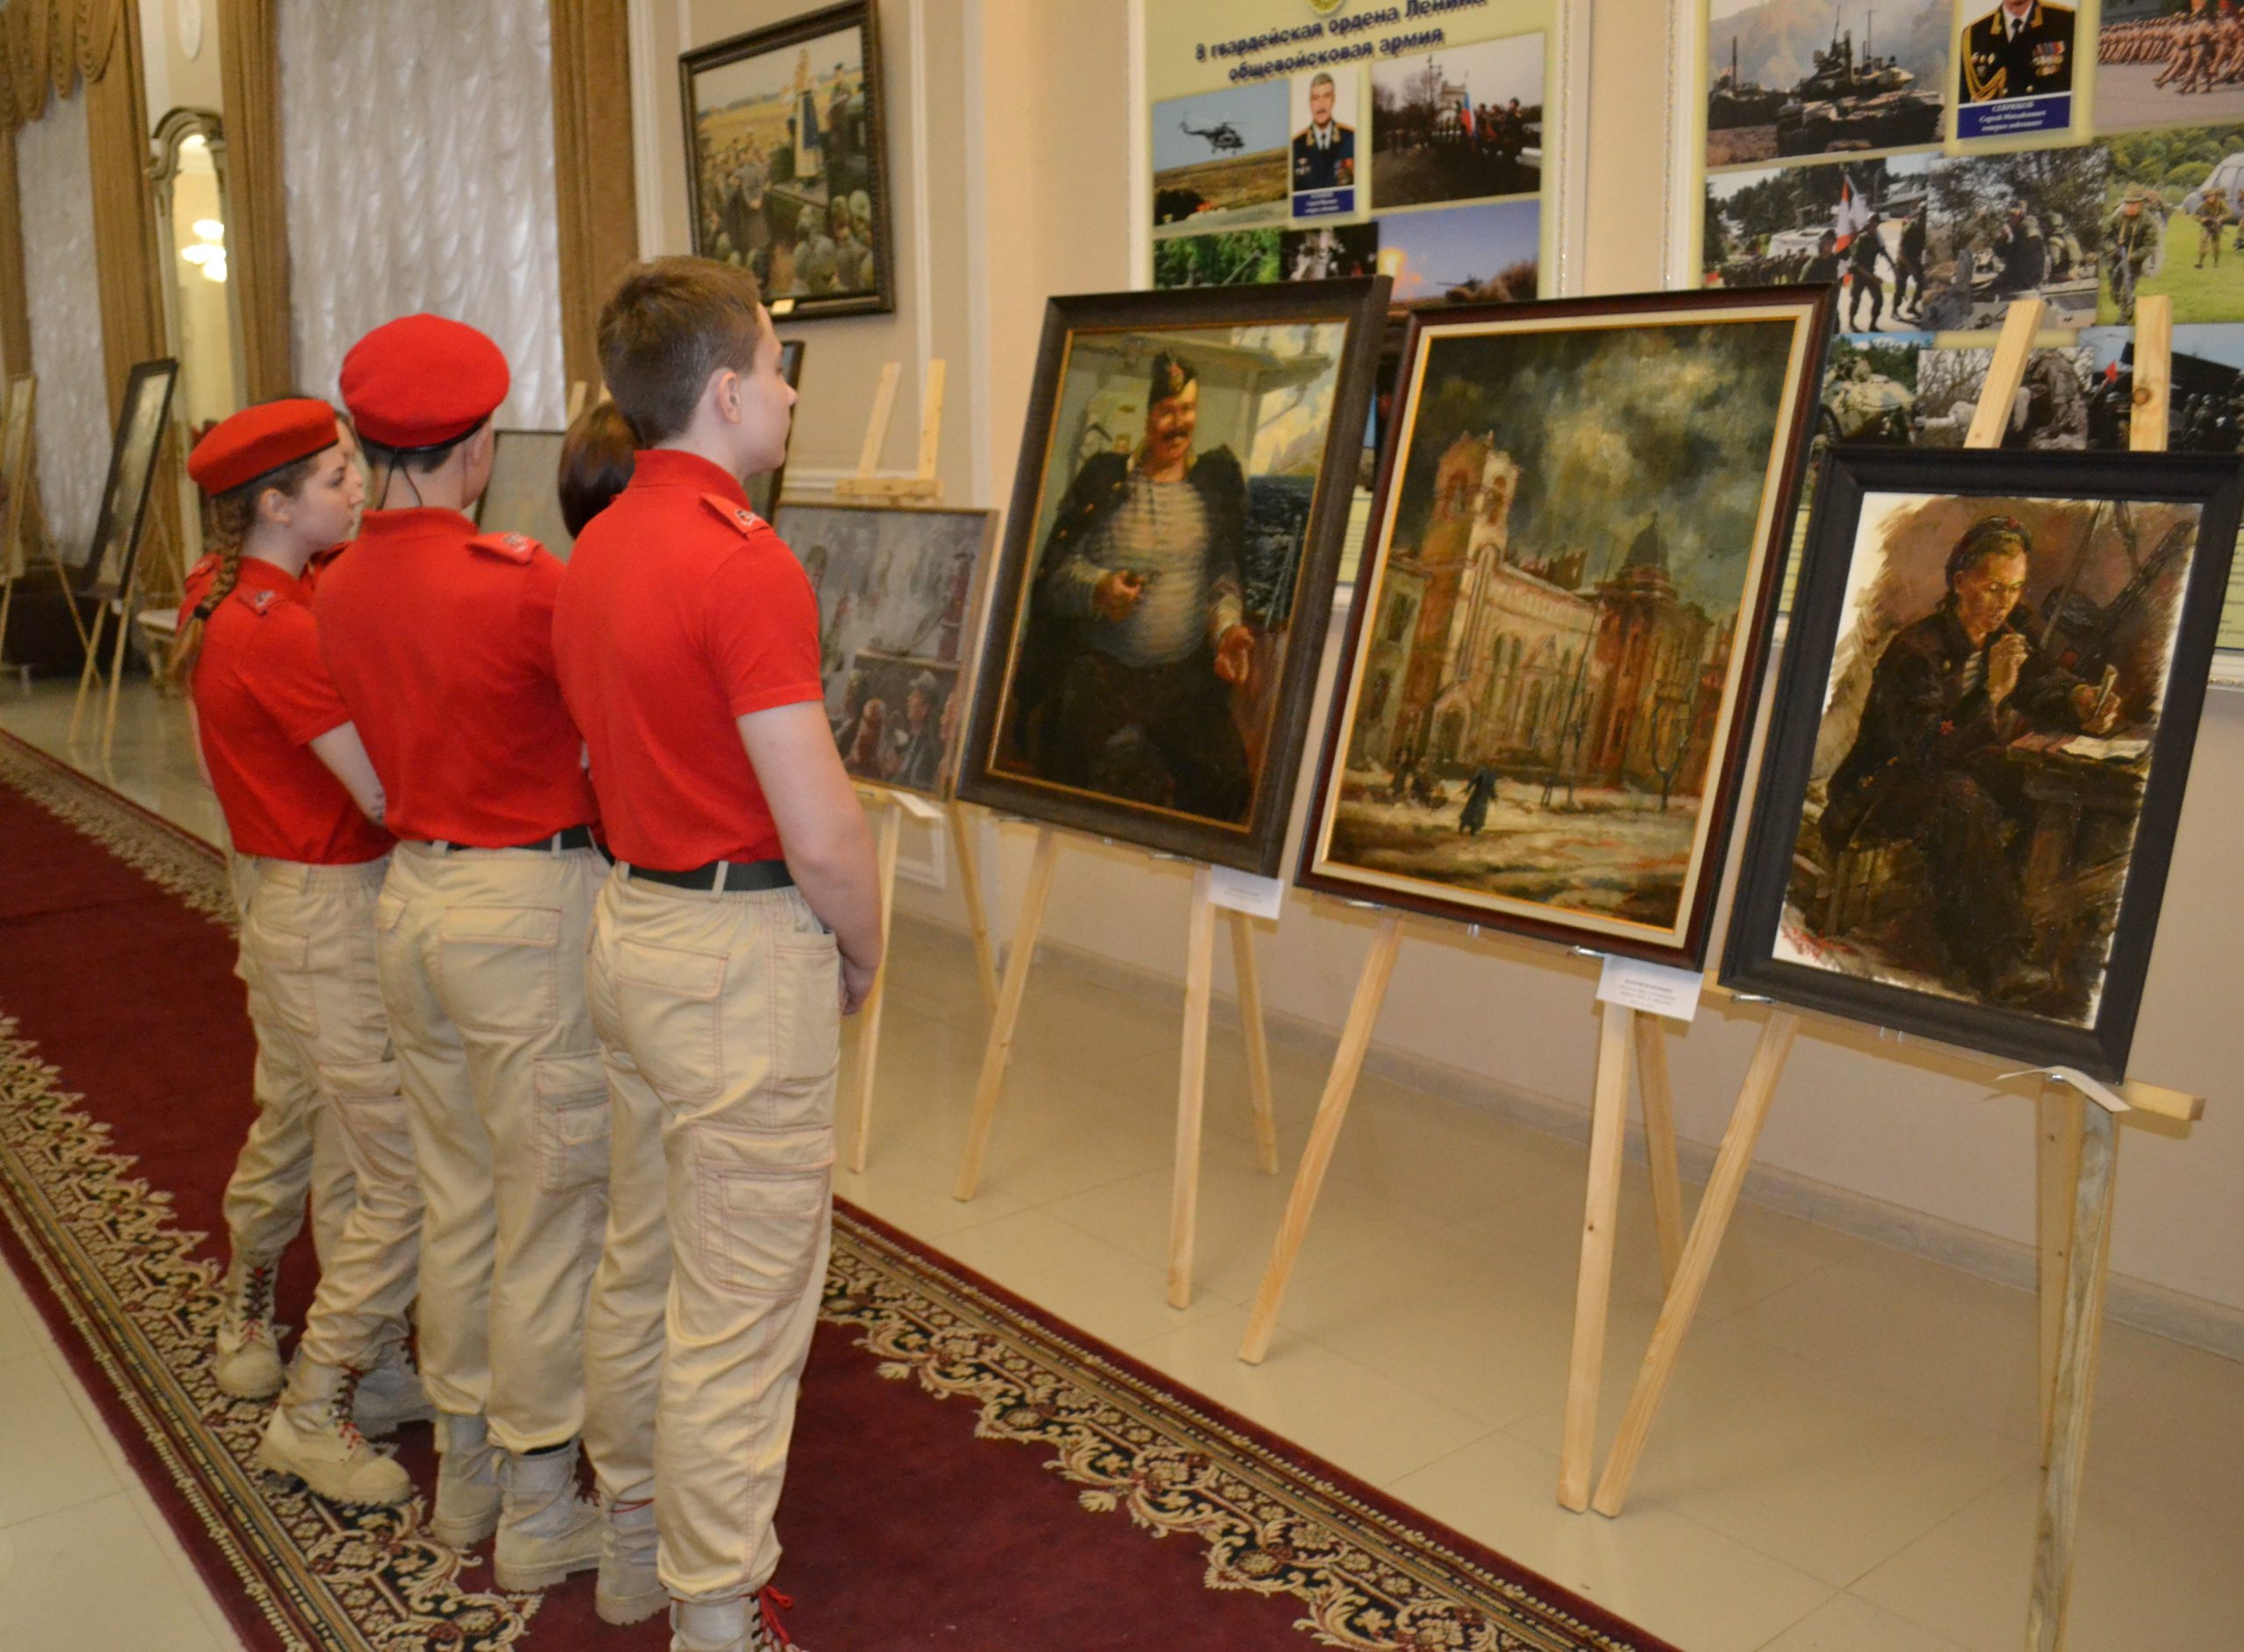 You are currently viewing Художественная выставка авторских работ военных художников Рафаэля Лукьянова и Валерия Величкевича.